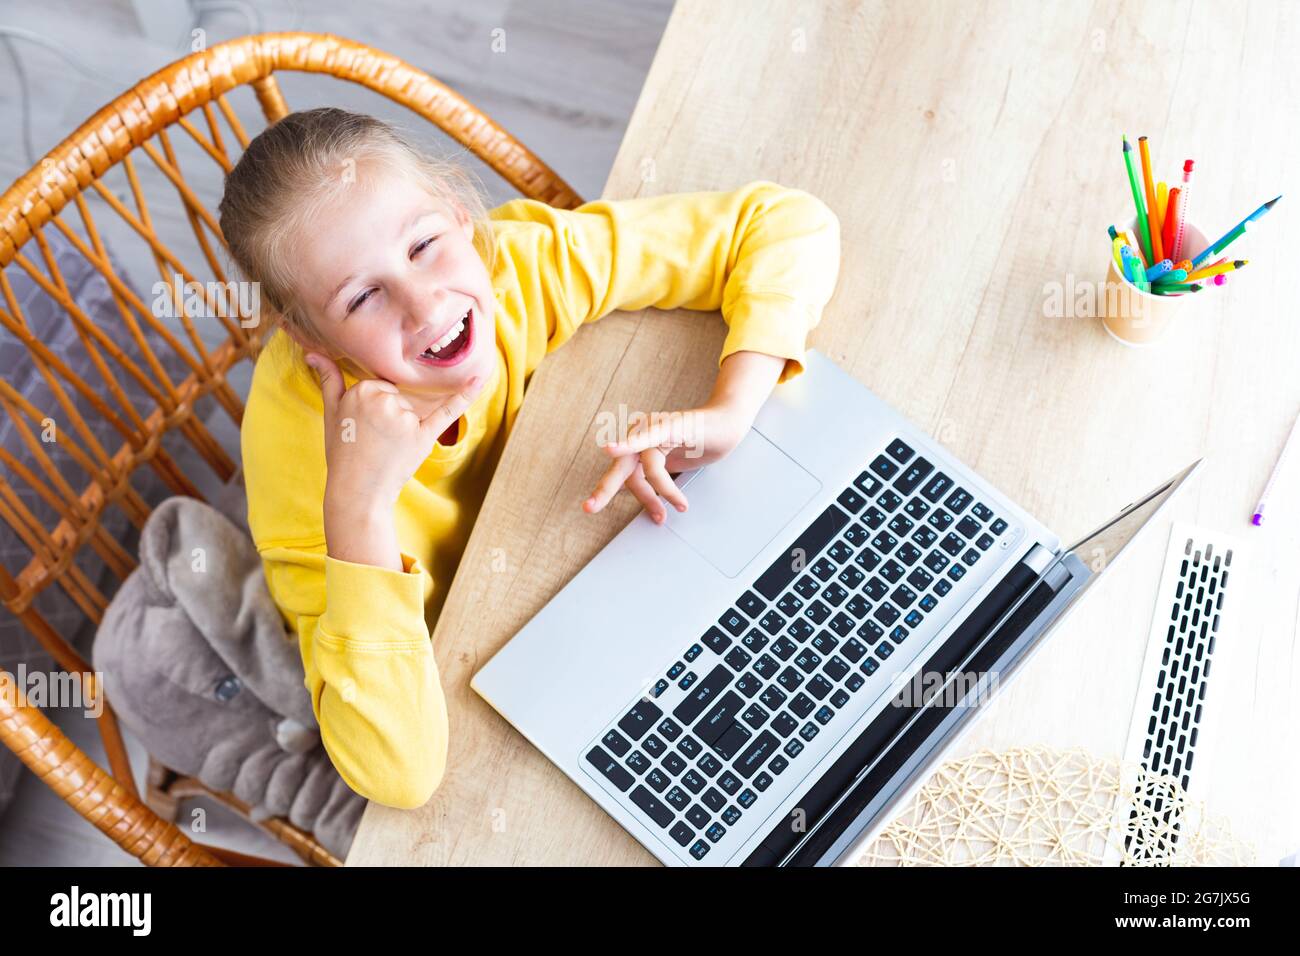 Caucasienne heureuse fille de 10-11 ans est assise dans un fauteuil en osier à un bureau, à côté d'un ordinateur portable, montre un geste - appelez-moi, vue de dessus. Aide à la fatigue oculaire Banque D'Images